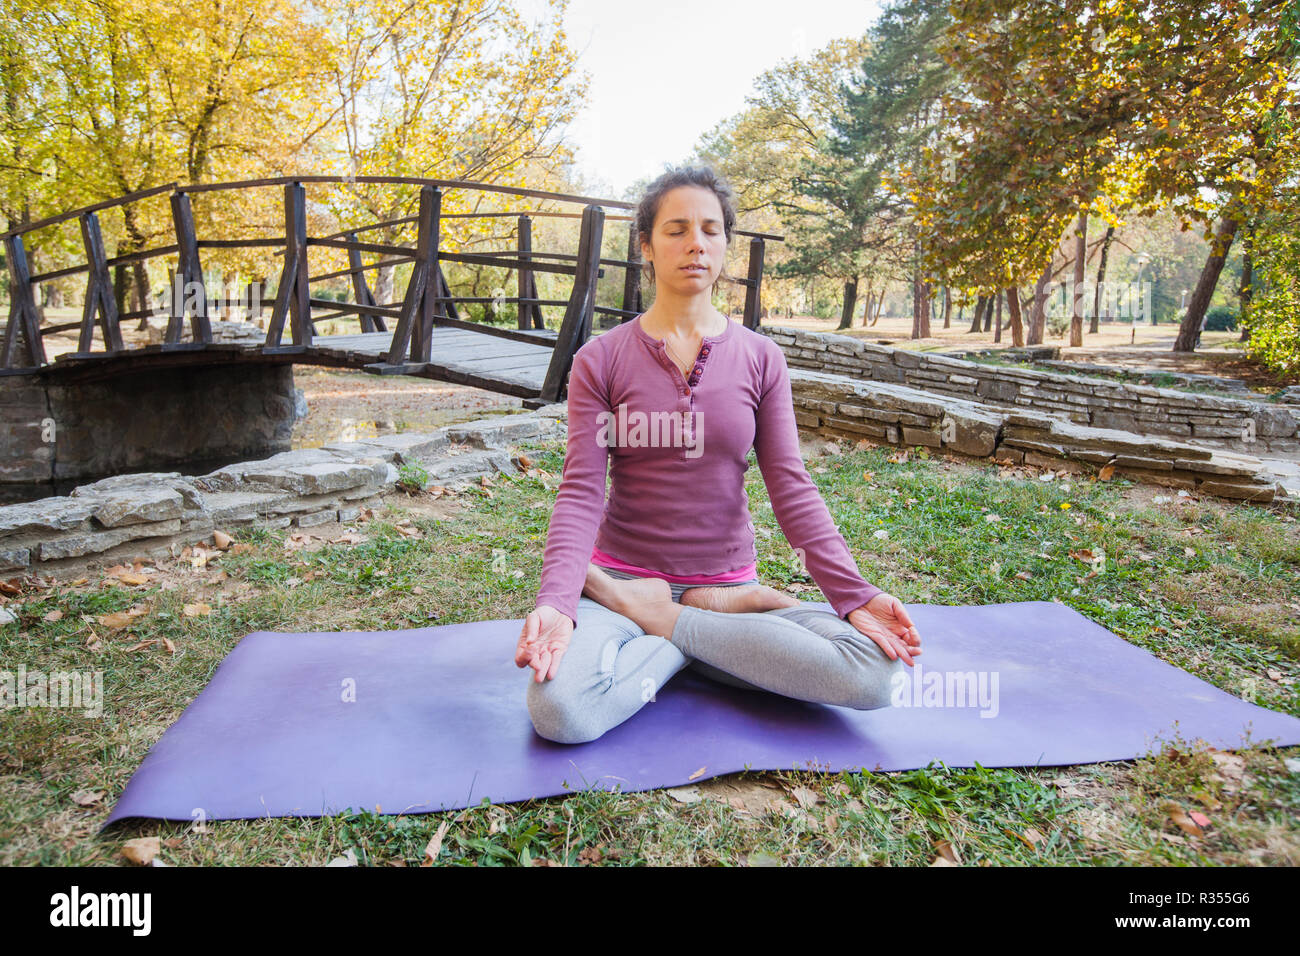 Gesunde, junge schöne Frau Praktizieren von Yoga und Meditation im Lotussitz Padmasana, Übung, Sitzen auf den Fitness Matte im Park im Herbst Tag. Stockfoto